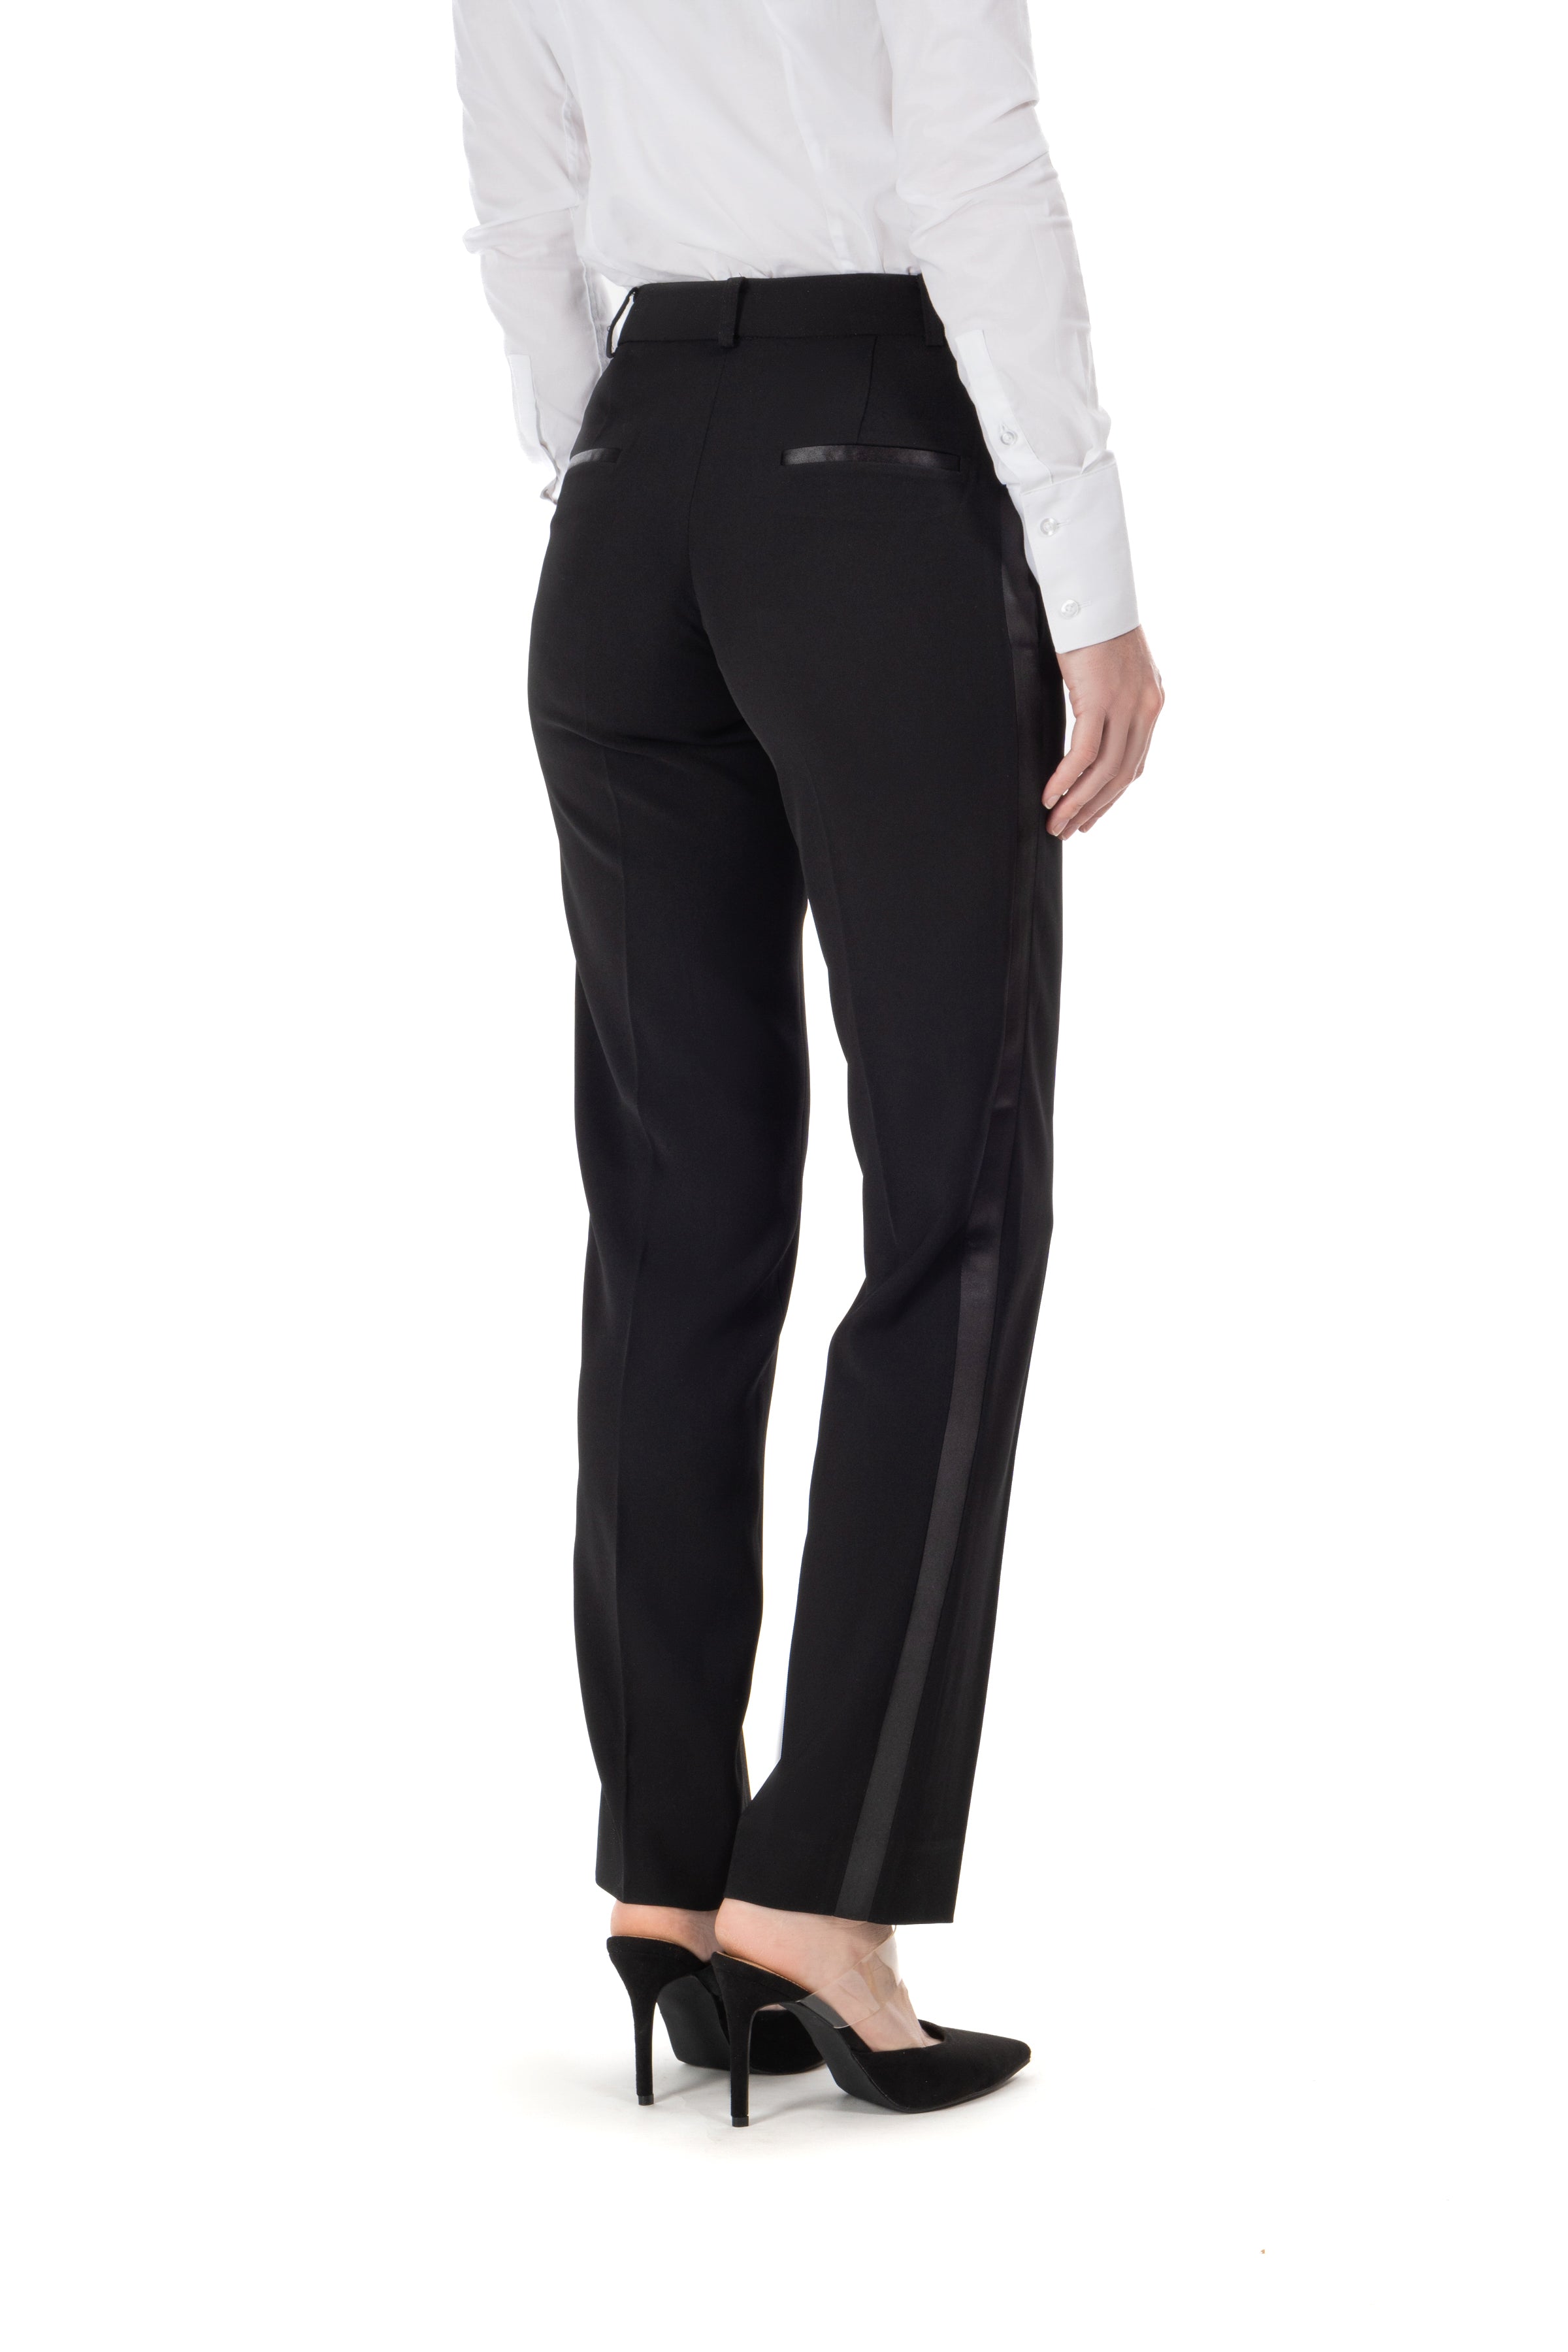 Sloane Tuxedo Pants - Slim - Black – Paisley & Gray